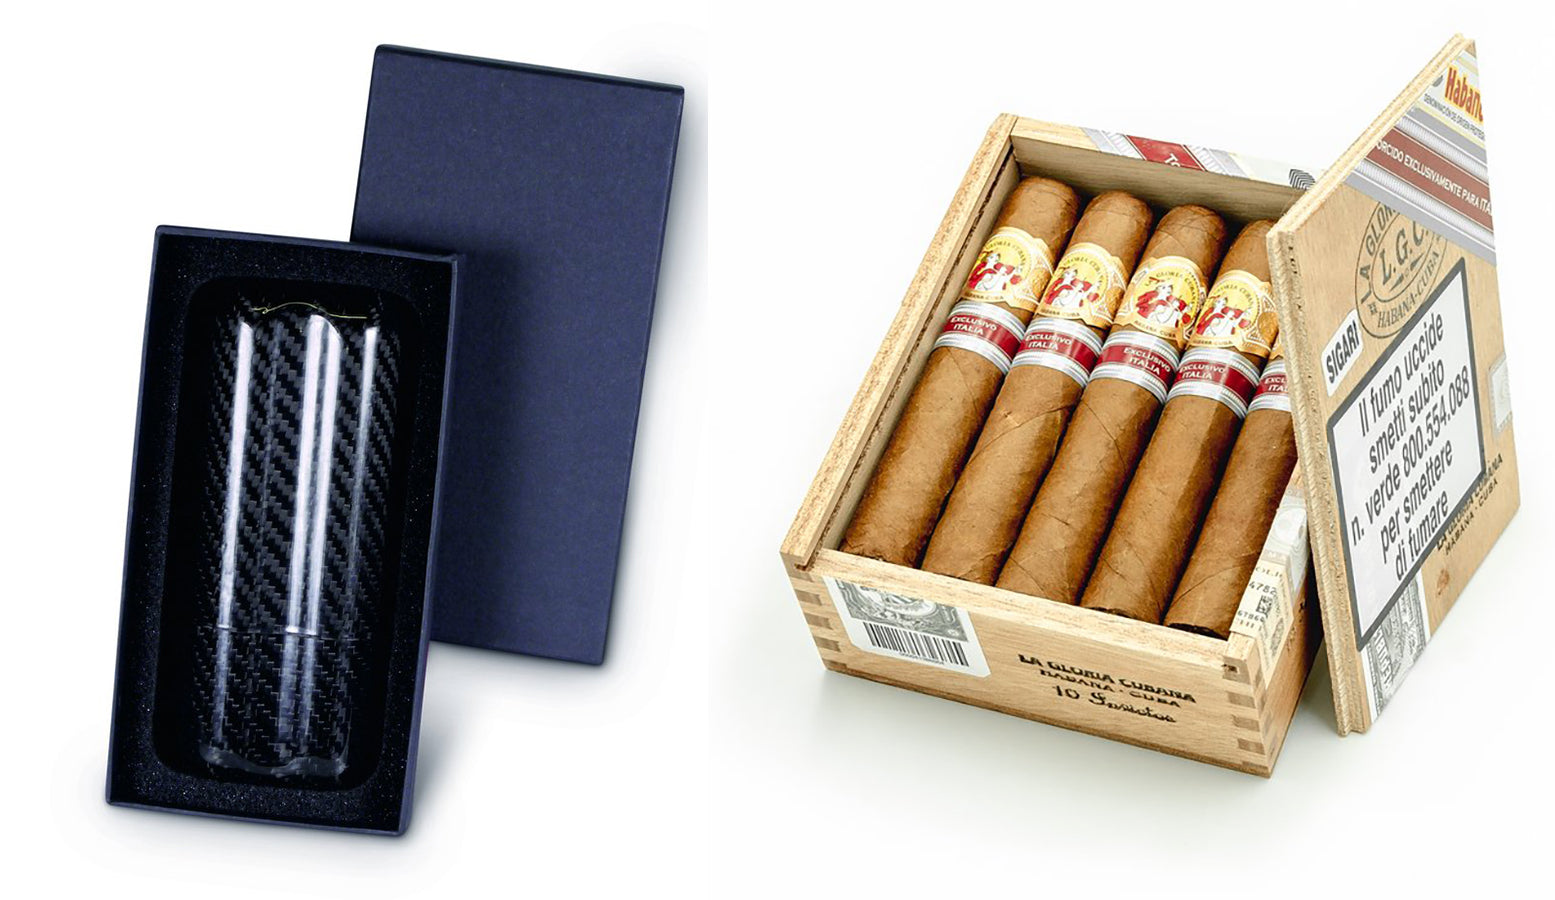 Carbon fibre cigar case La gloria cubana invictos cigar ex. italia 2018 EGm Cigars